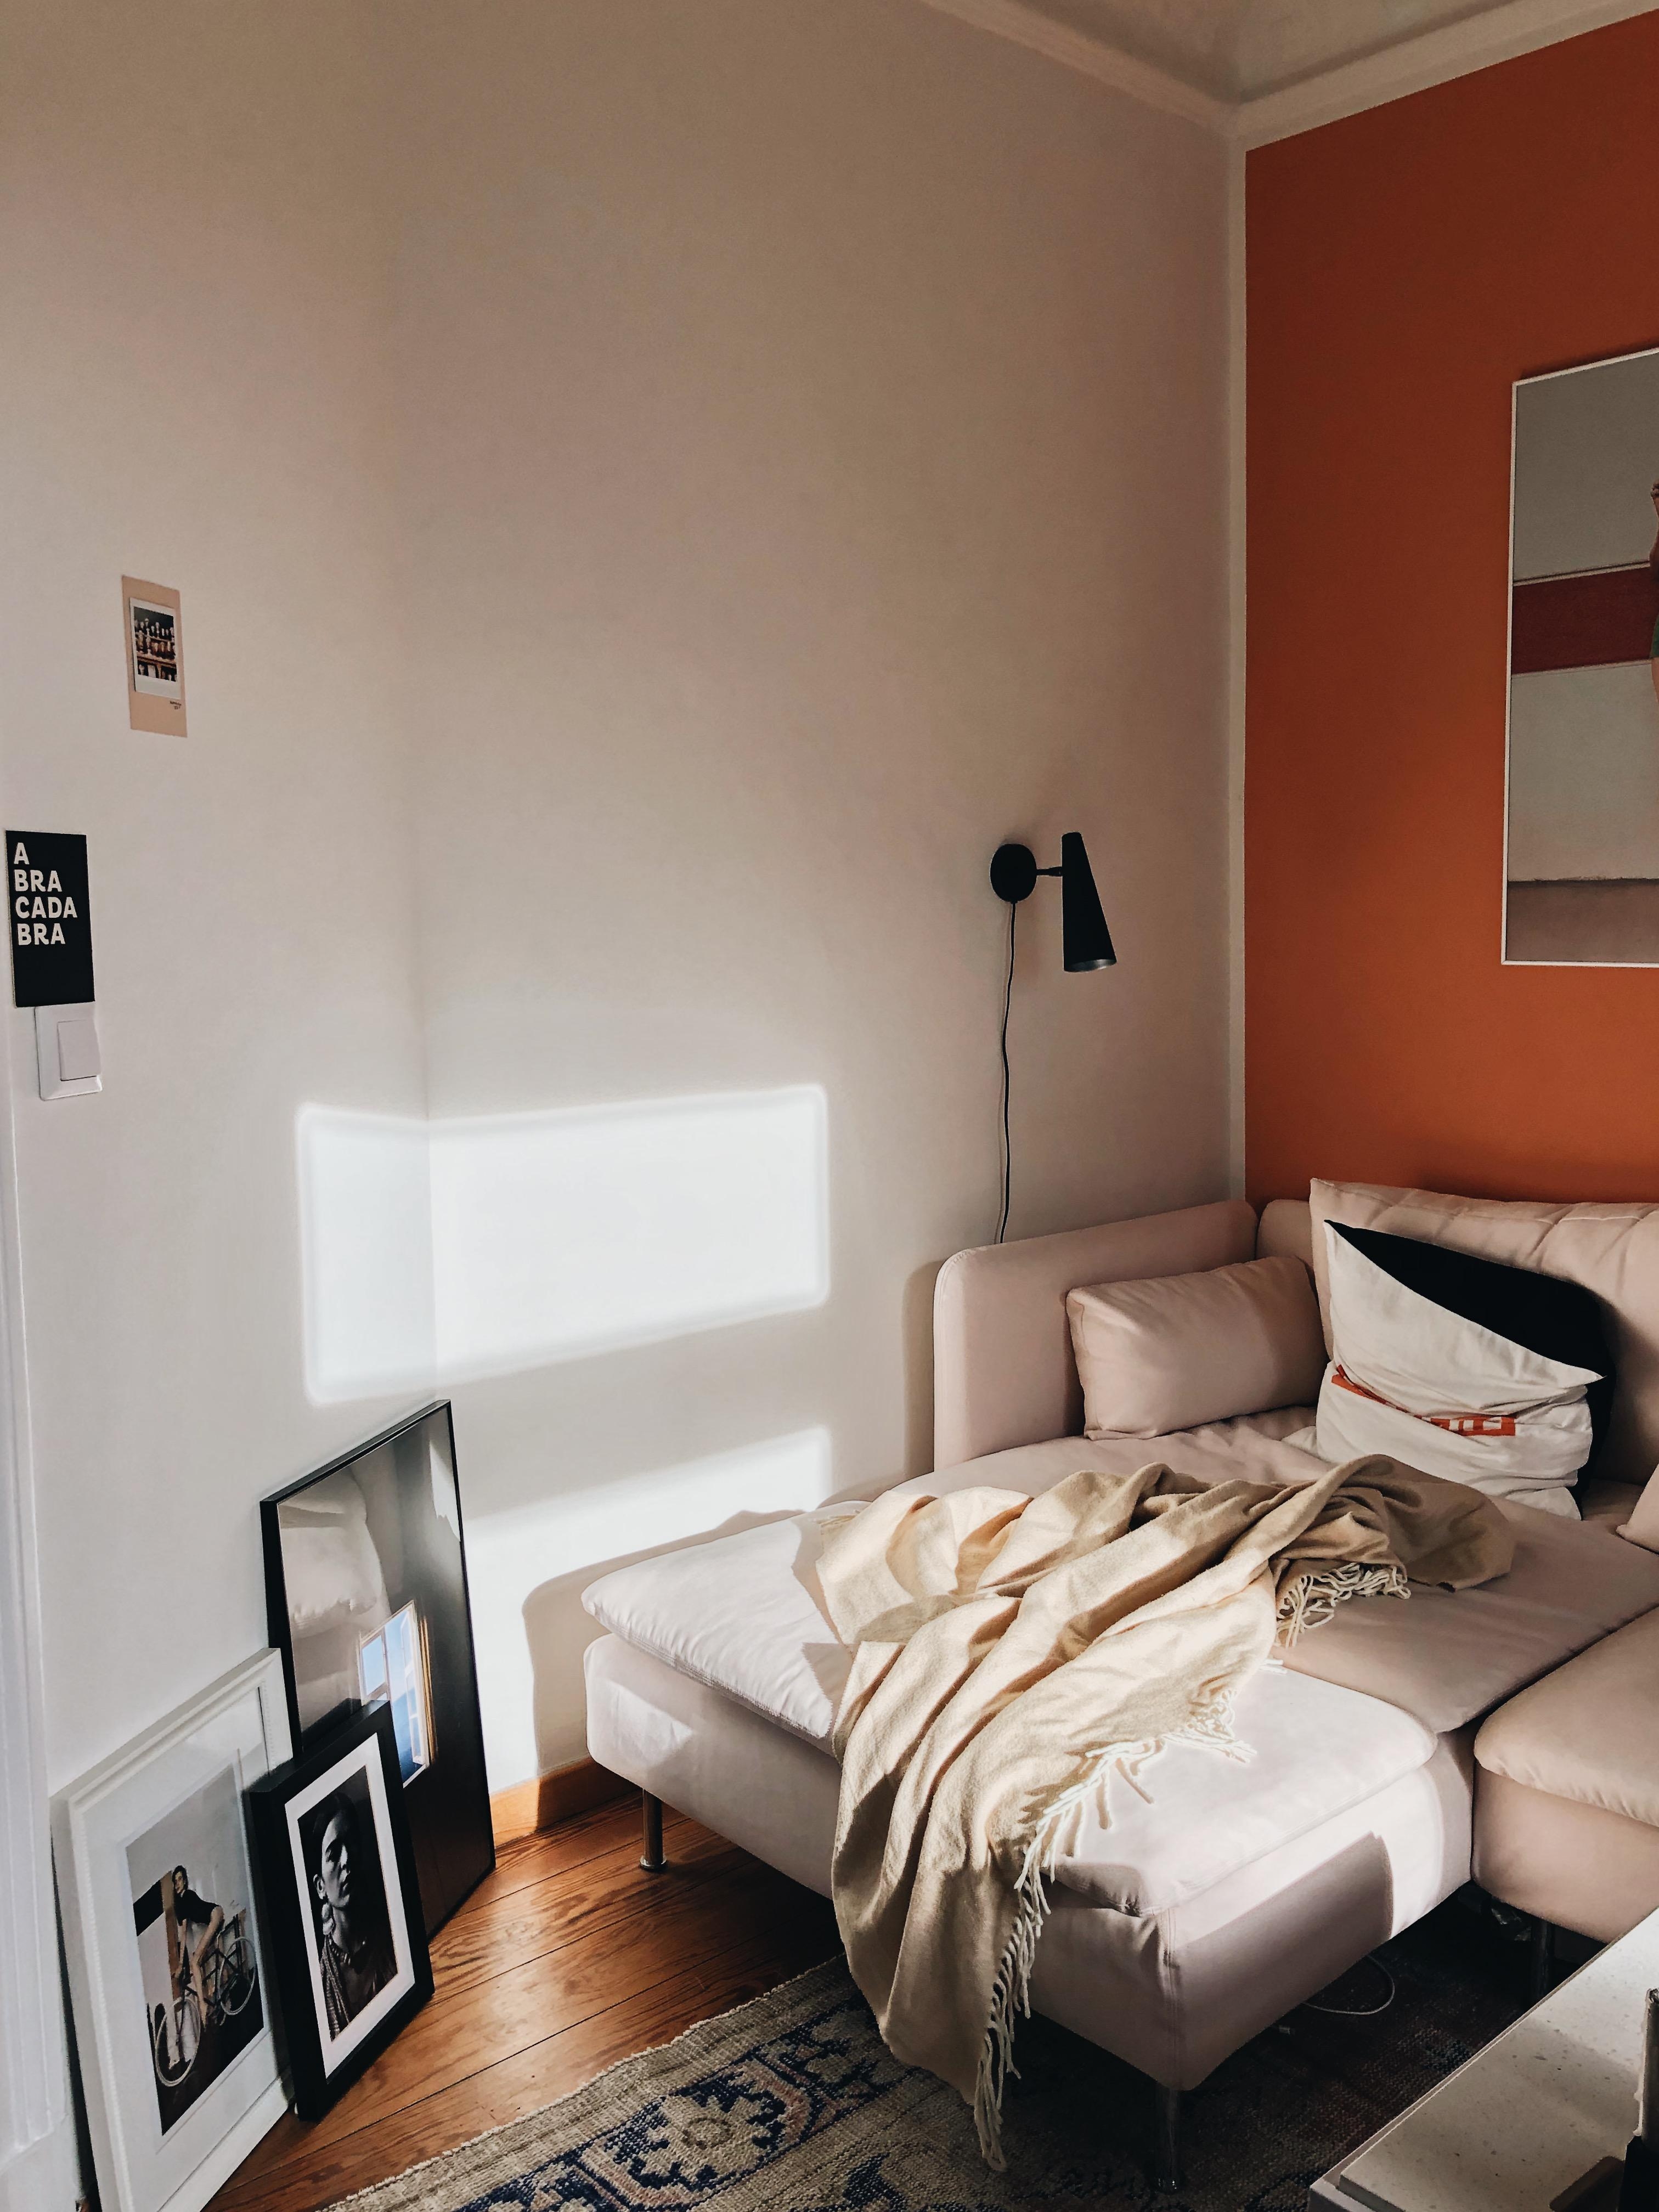 Bilderparade und Lichtspiele.
#wohnzimmer #livingroom #sunlight #couchstyle #lightandshadow #cozycorner #orange